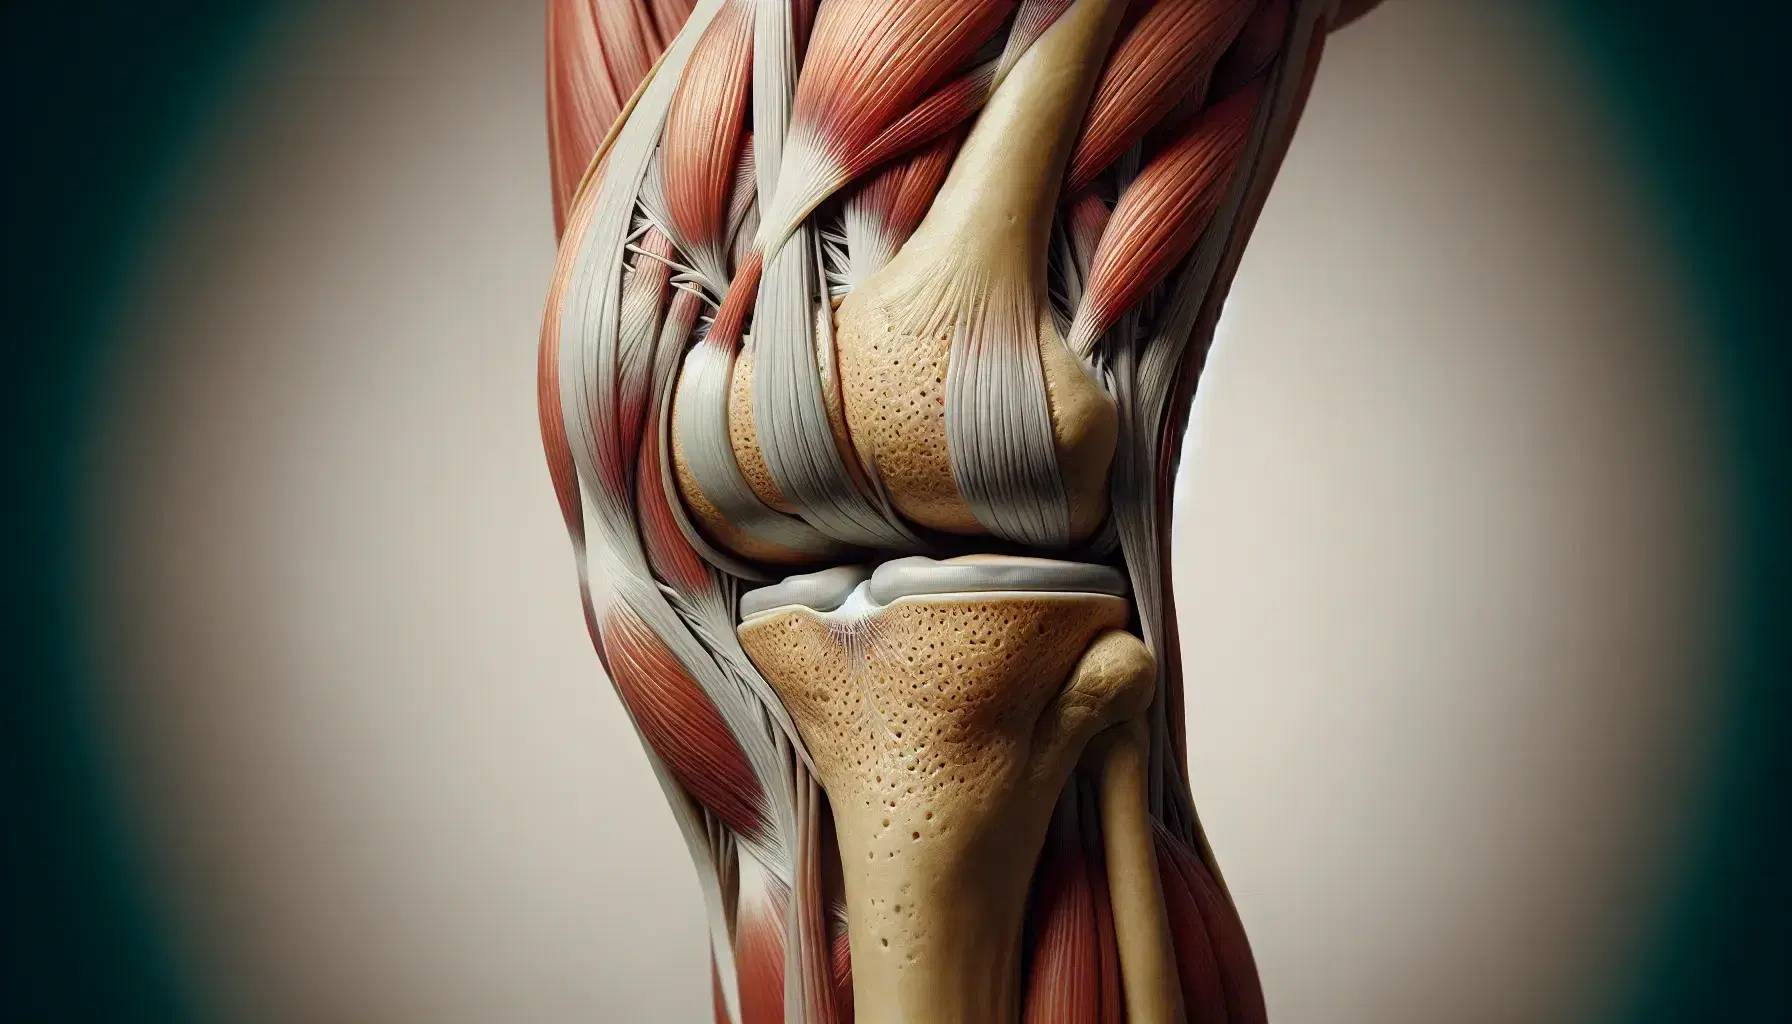 Vista anatómica detallada de una rodilla humana derecha mostrando músculos, tendones, ligamentos y huesos sin piel ni tejidos blandos.